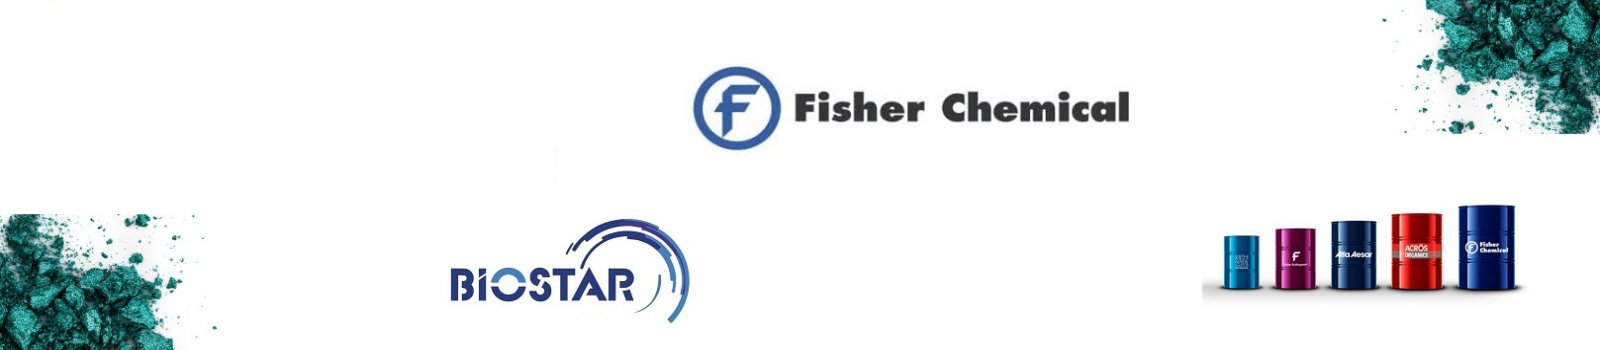 Fisher Chemical Ürünleri Biostar'da.